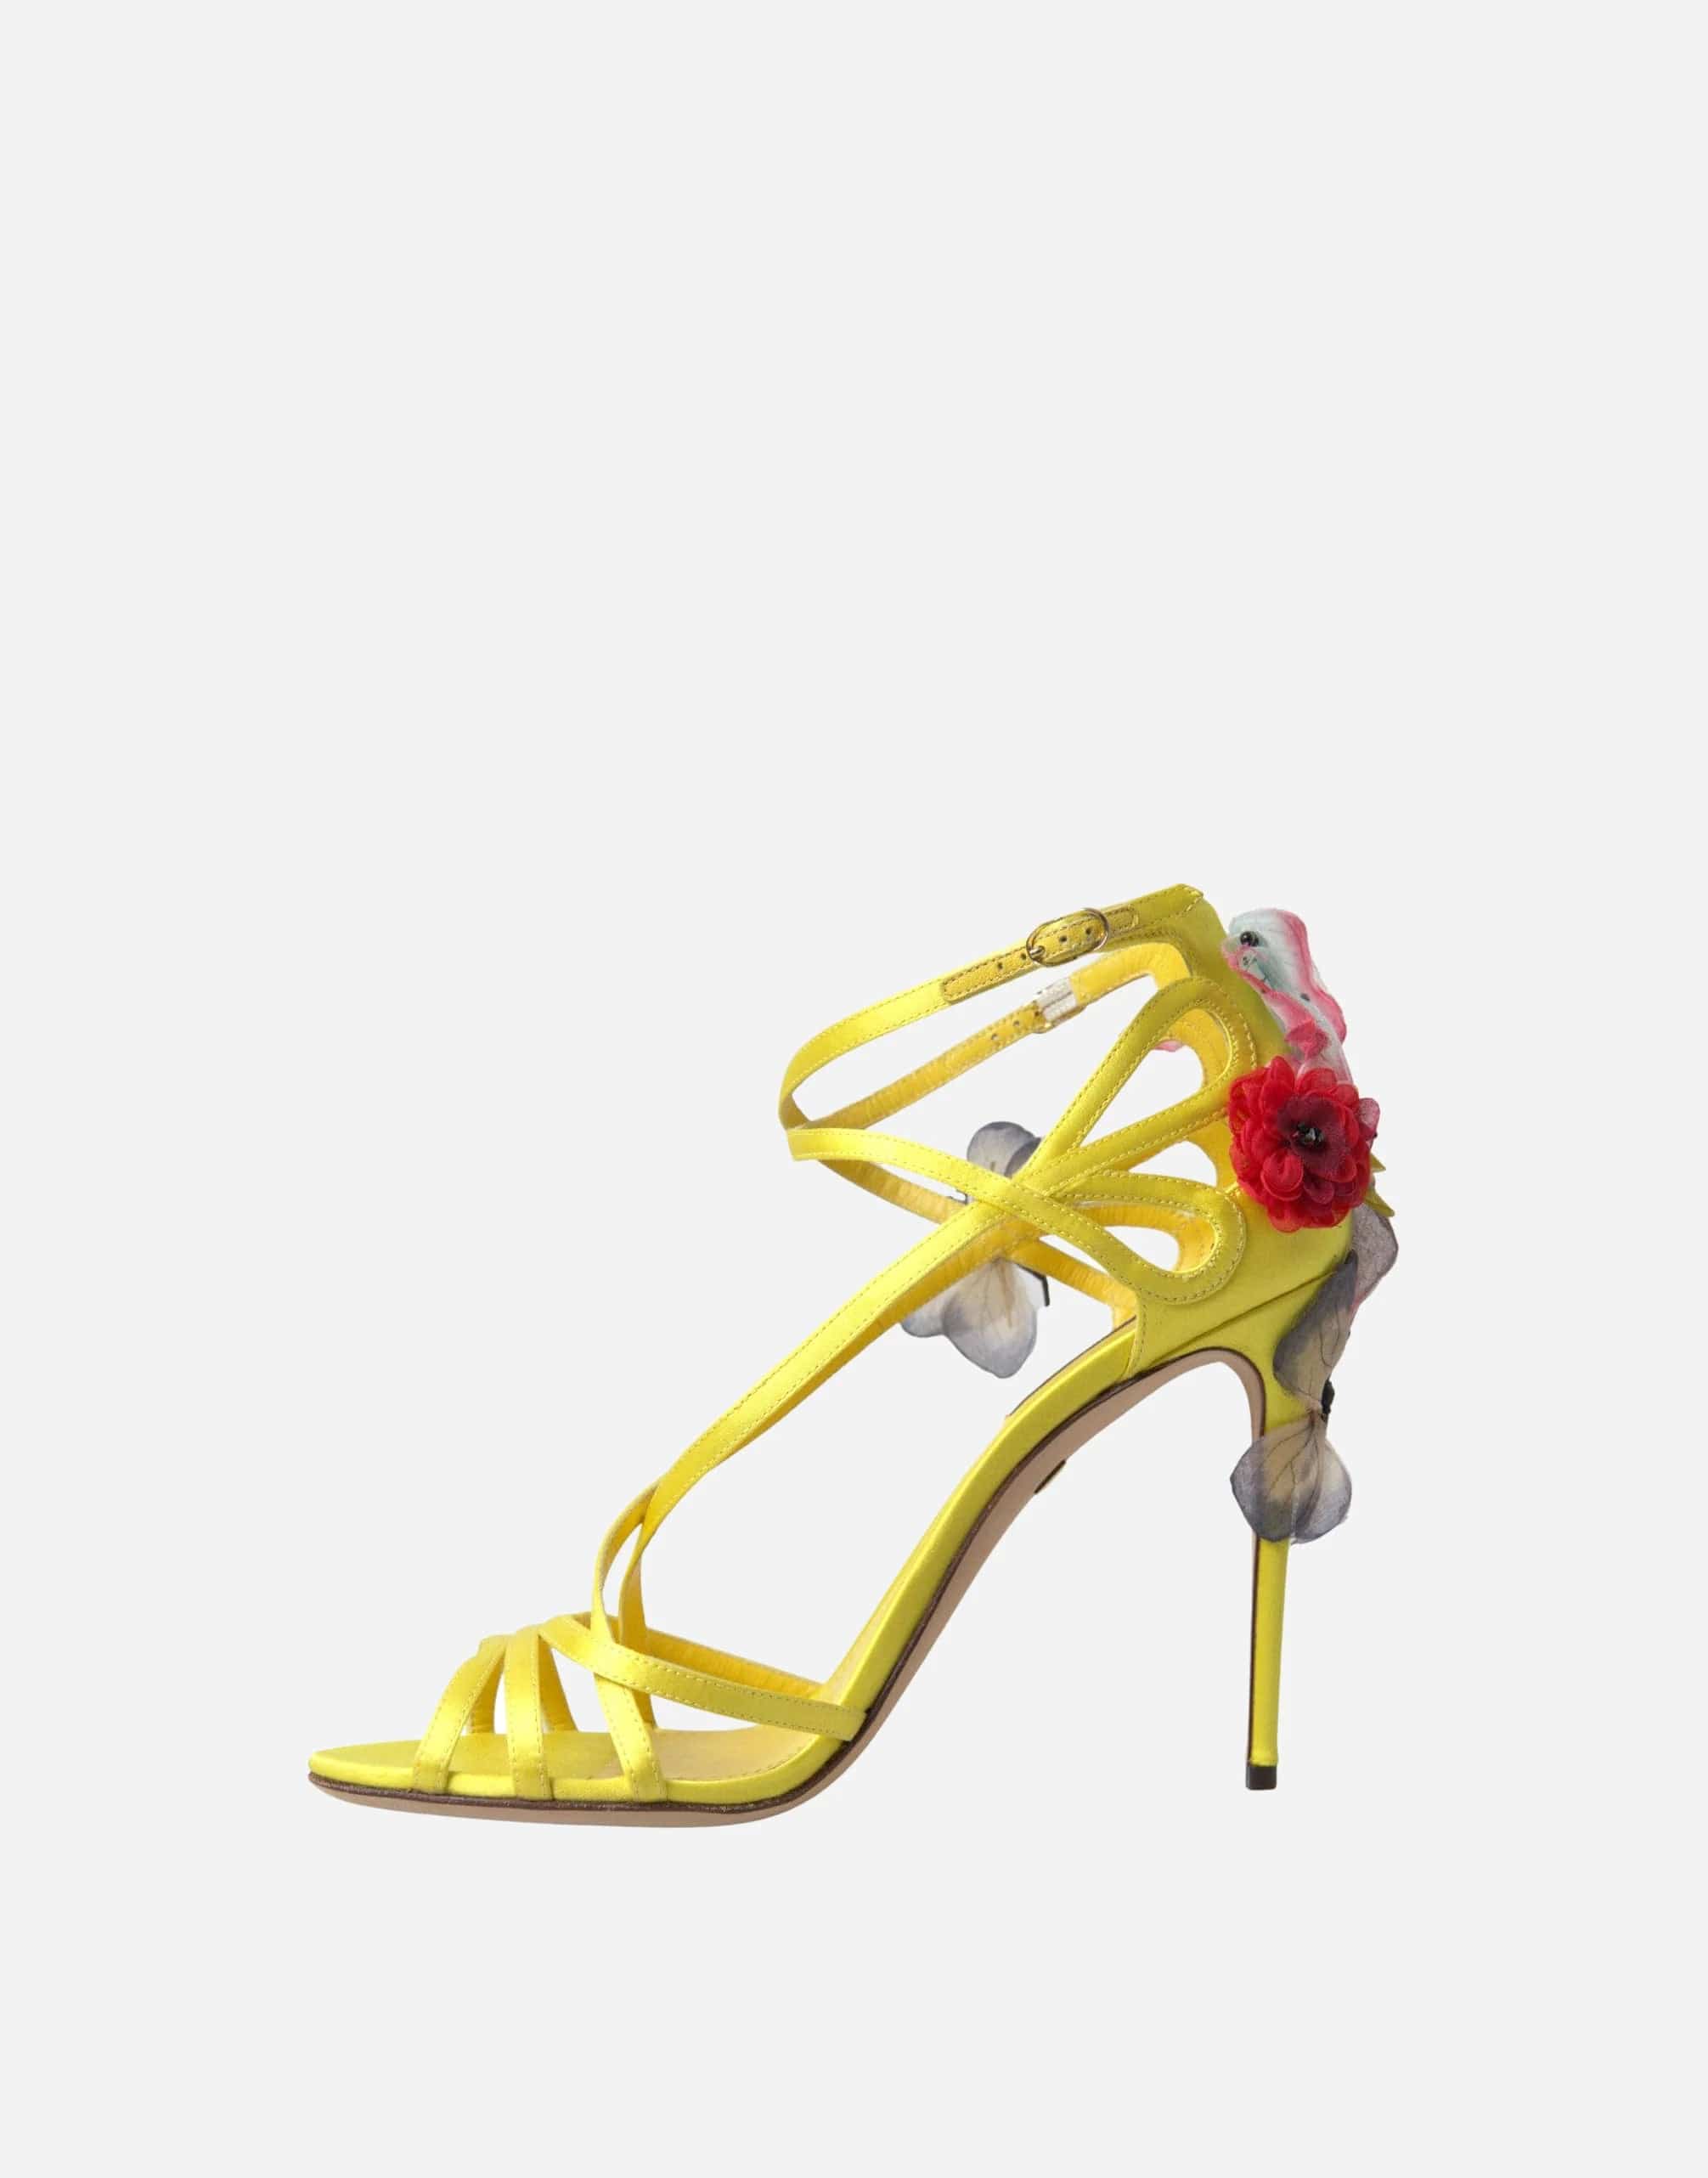 Dolce & Gabbana Keira Butterfly Appliqués Sandals